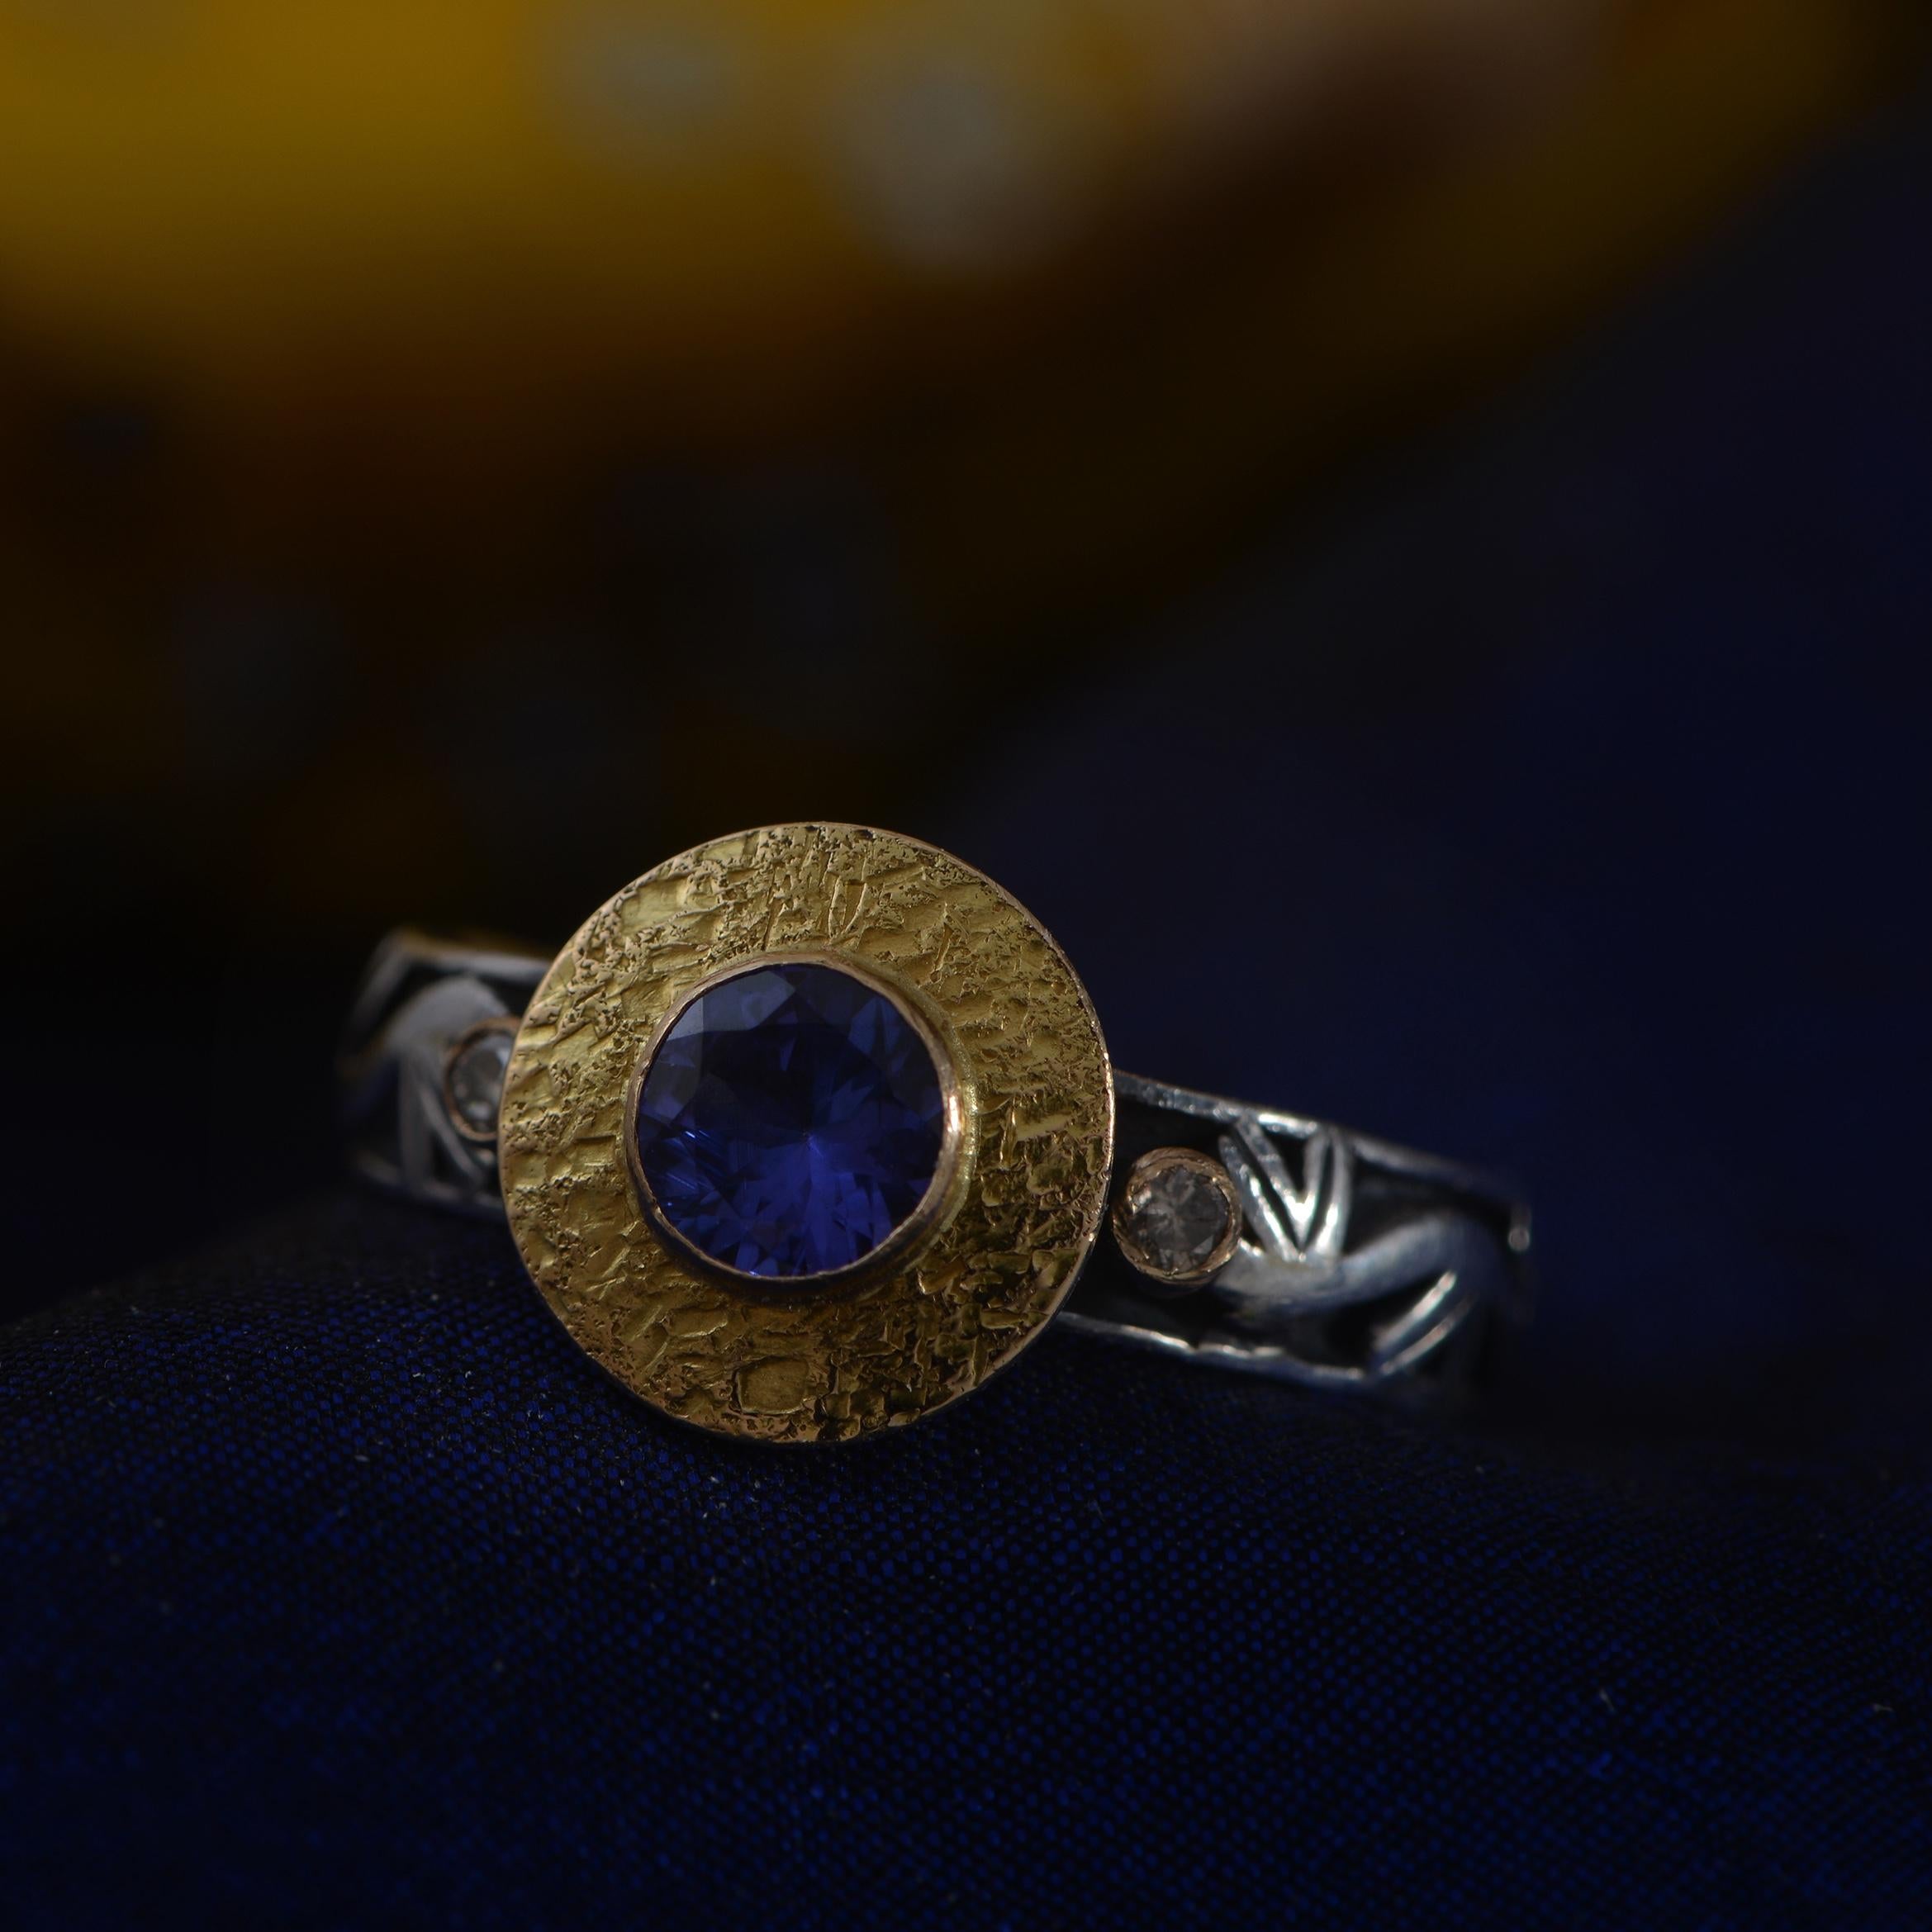 Cette jolie bague en tanzanite est unique en son genre. Fabriquée à la main dans nos ateliers, elle présente une tanzanite centrale sertie en or 18 carats, flanquée de deux diamants pleine taille également sertis en or 18 carats. La tige est en